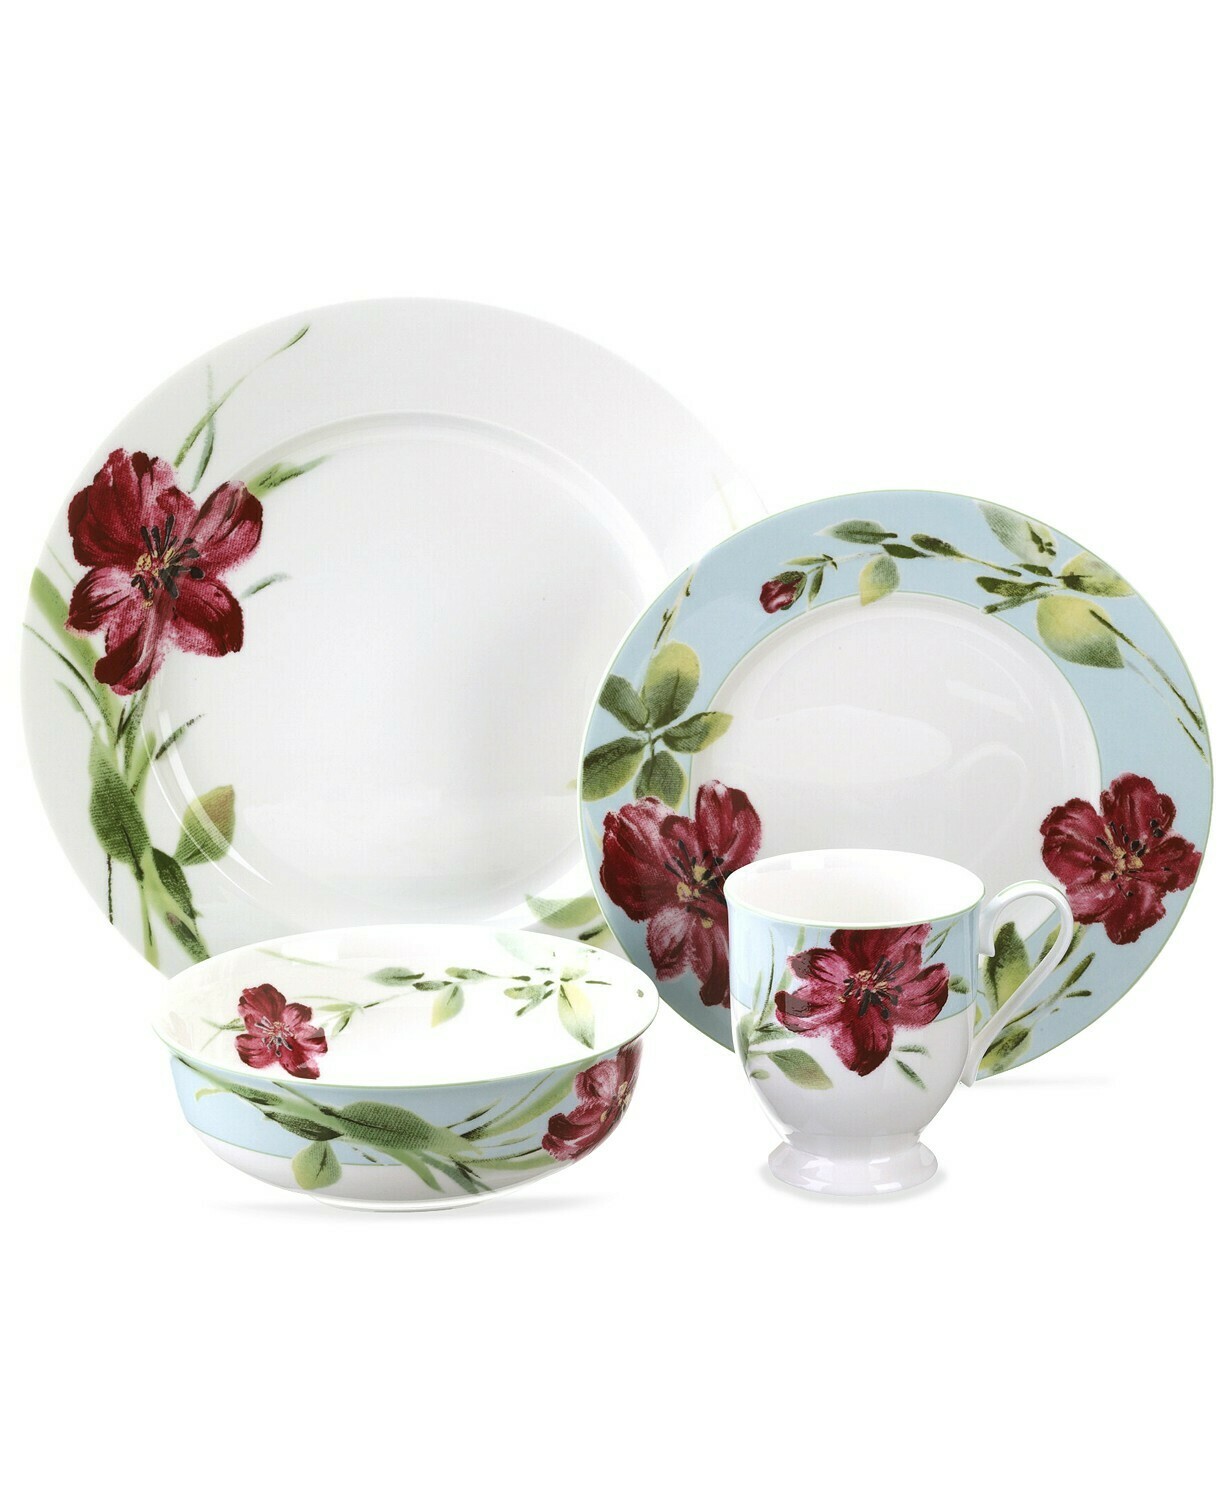 Oleg Cassini Dinnerware, Sweet Blossom Collection